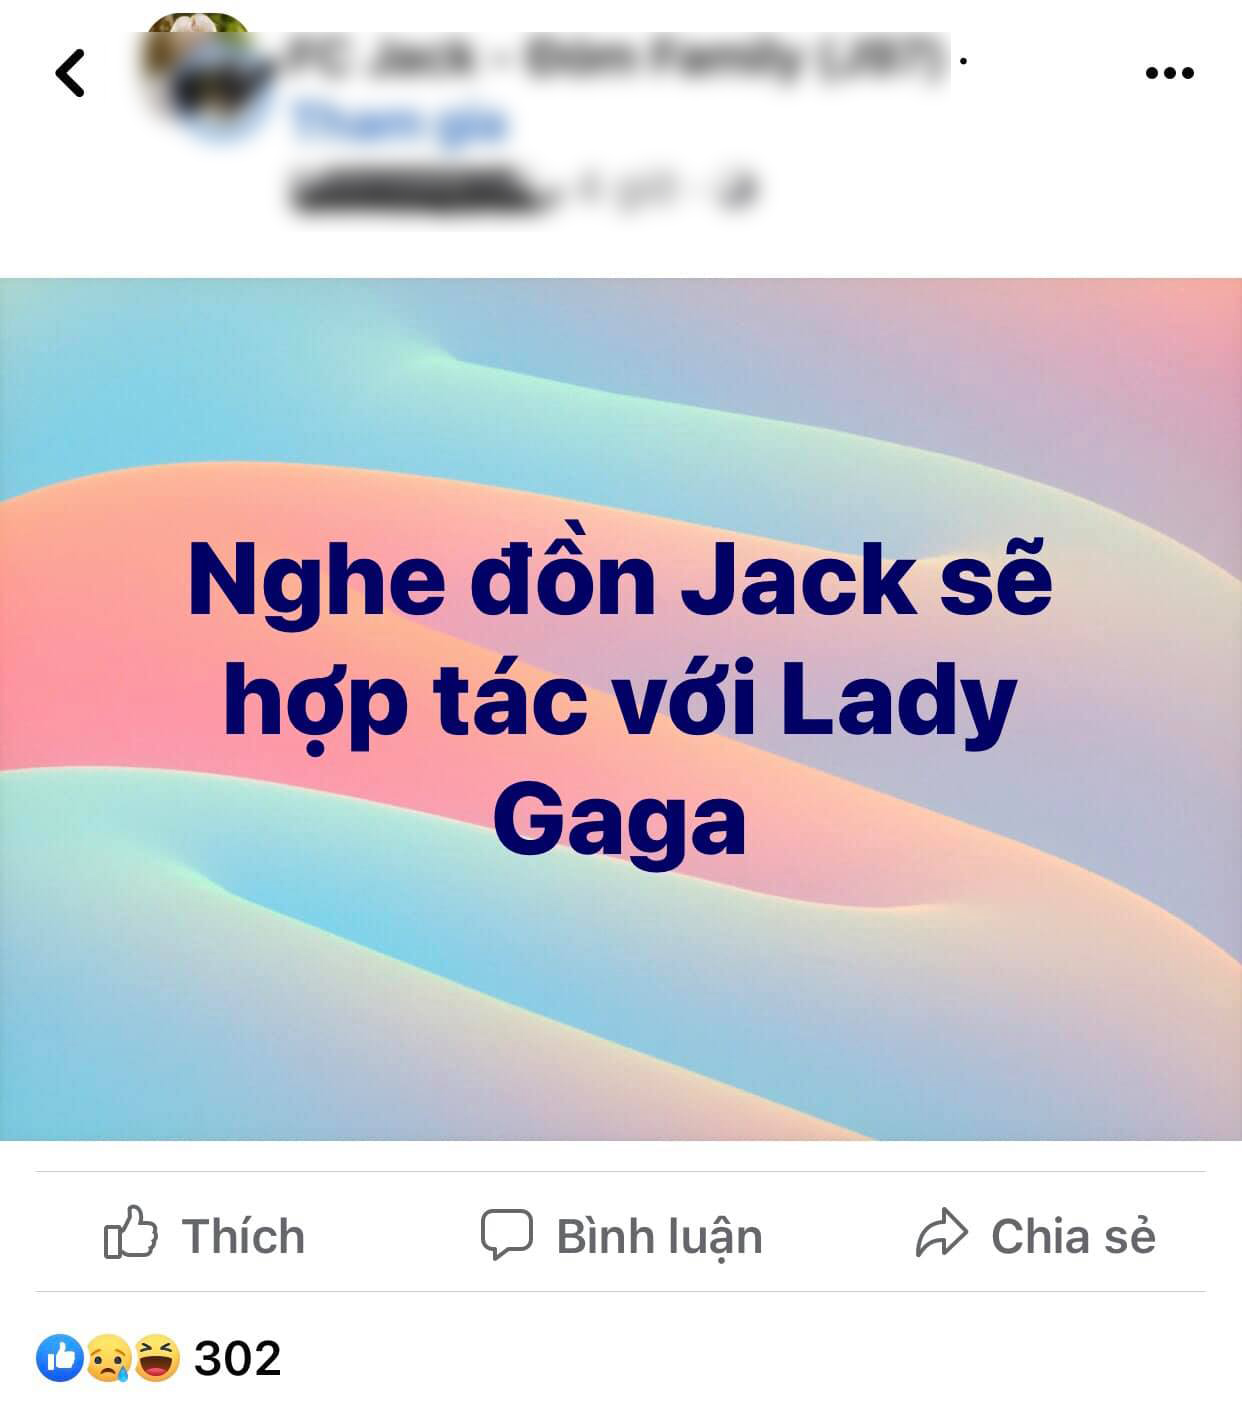 Thông tin đồn đoán Jack kết hợp với Lady Gaga được cho xuất phát từ một group fan của Jack